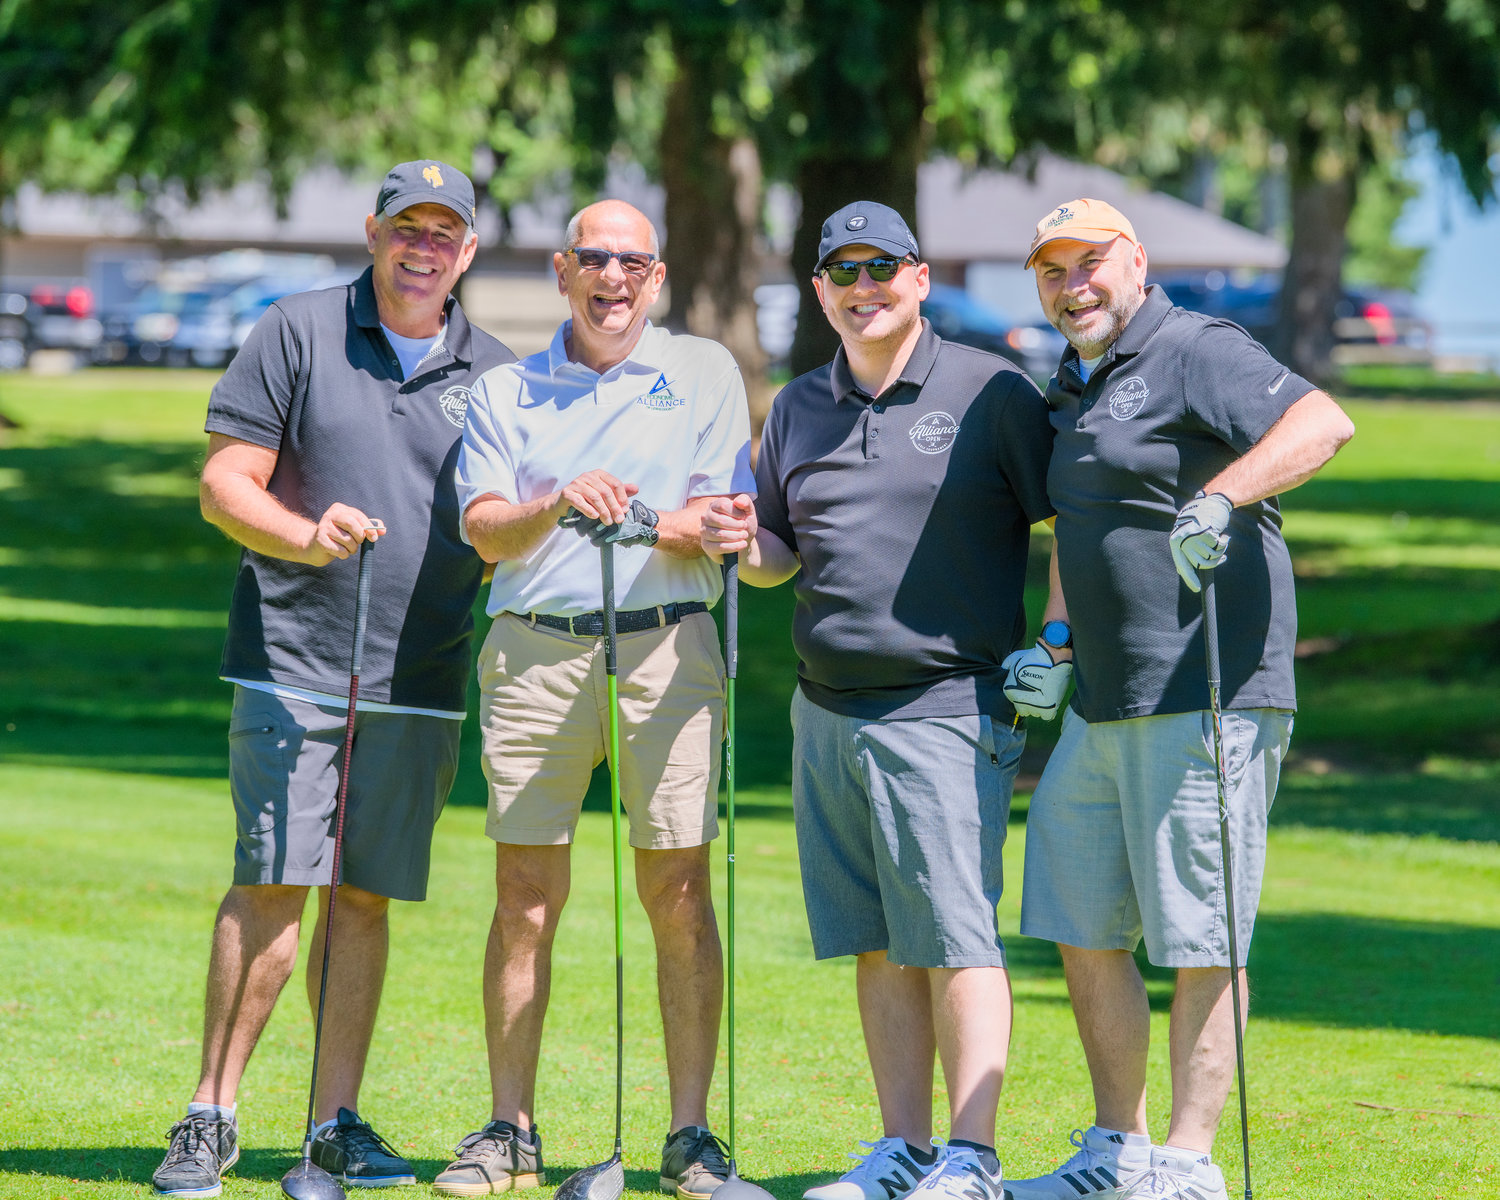 L'équipe de l'Alliance économique pose pour une photo vendredi à Chehalis lors d'un tournoi de golf caritatif.